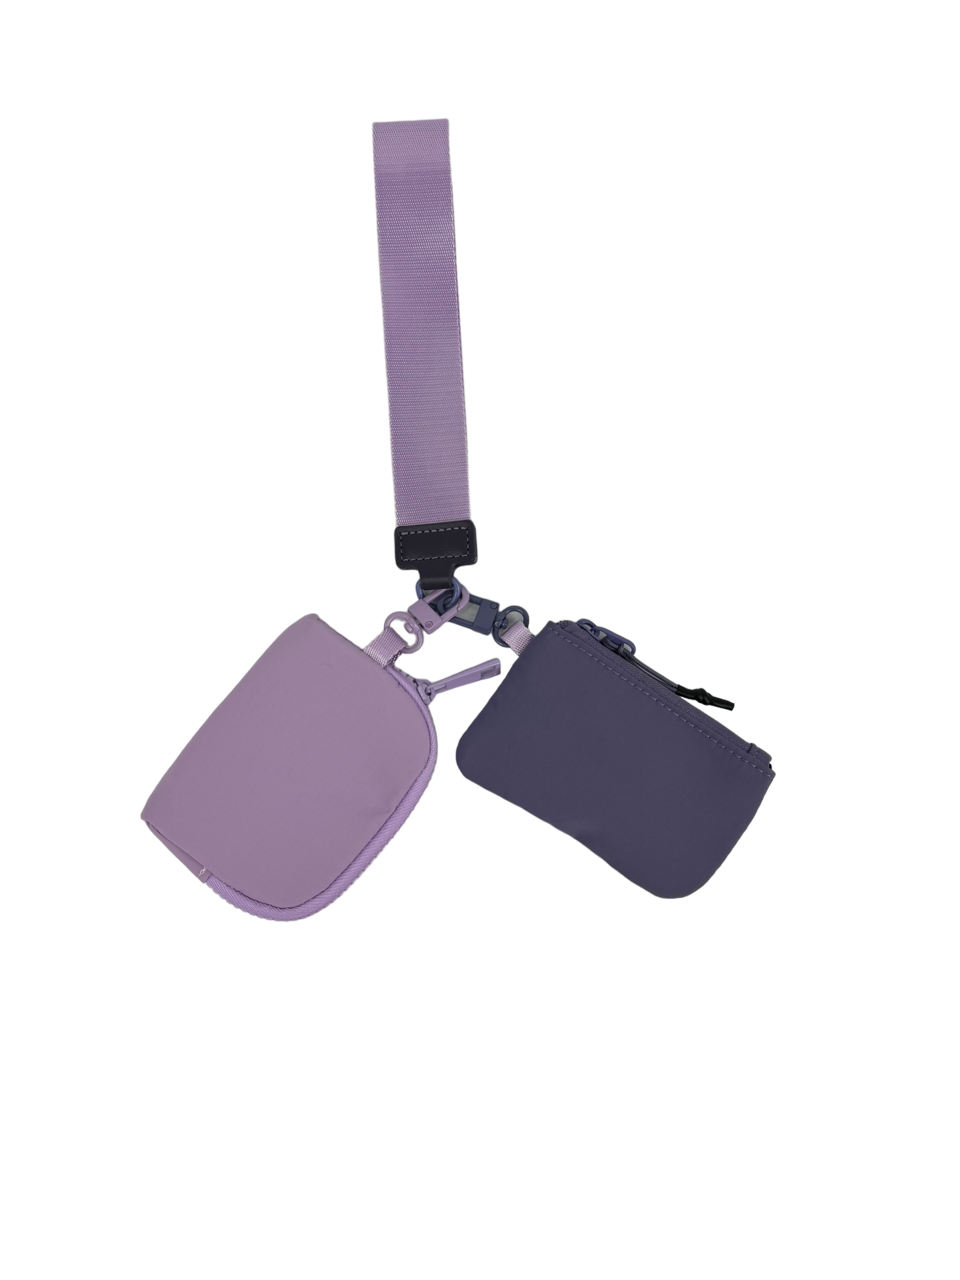 LL-4320 Wristlet Key Chain Double Pouch Purple Lavender